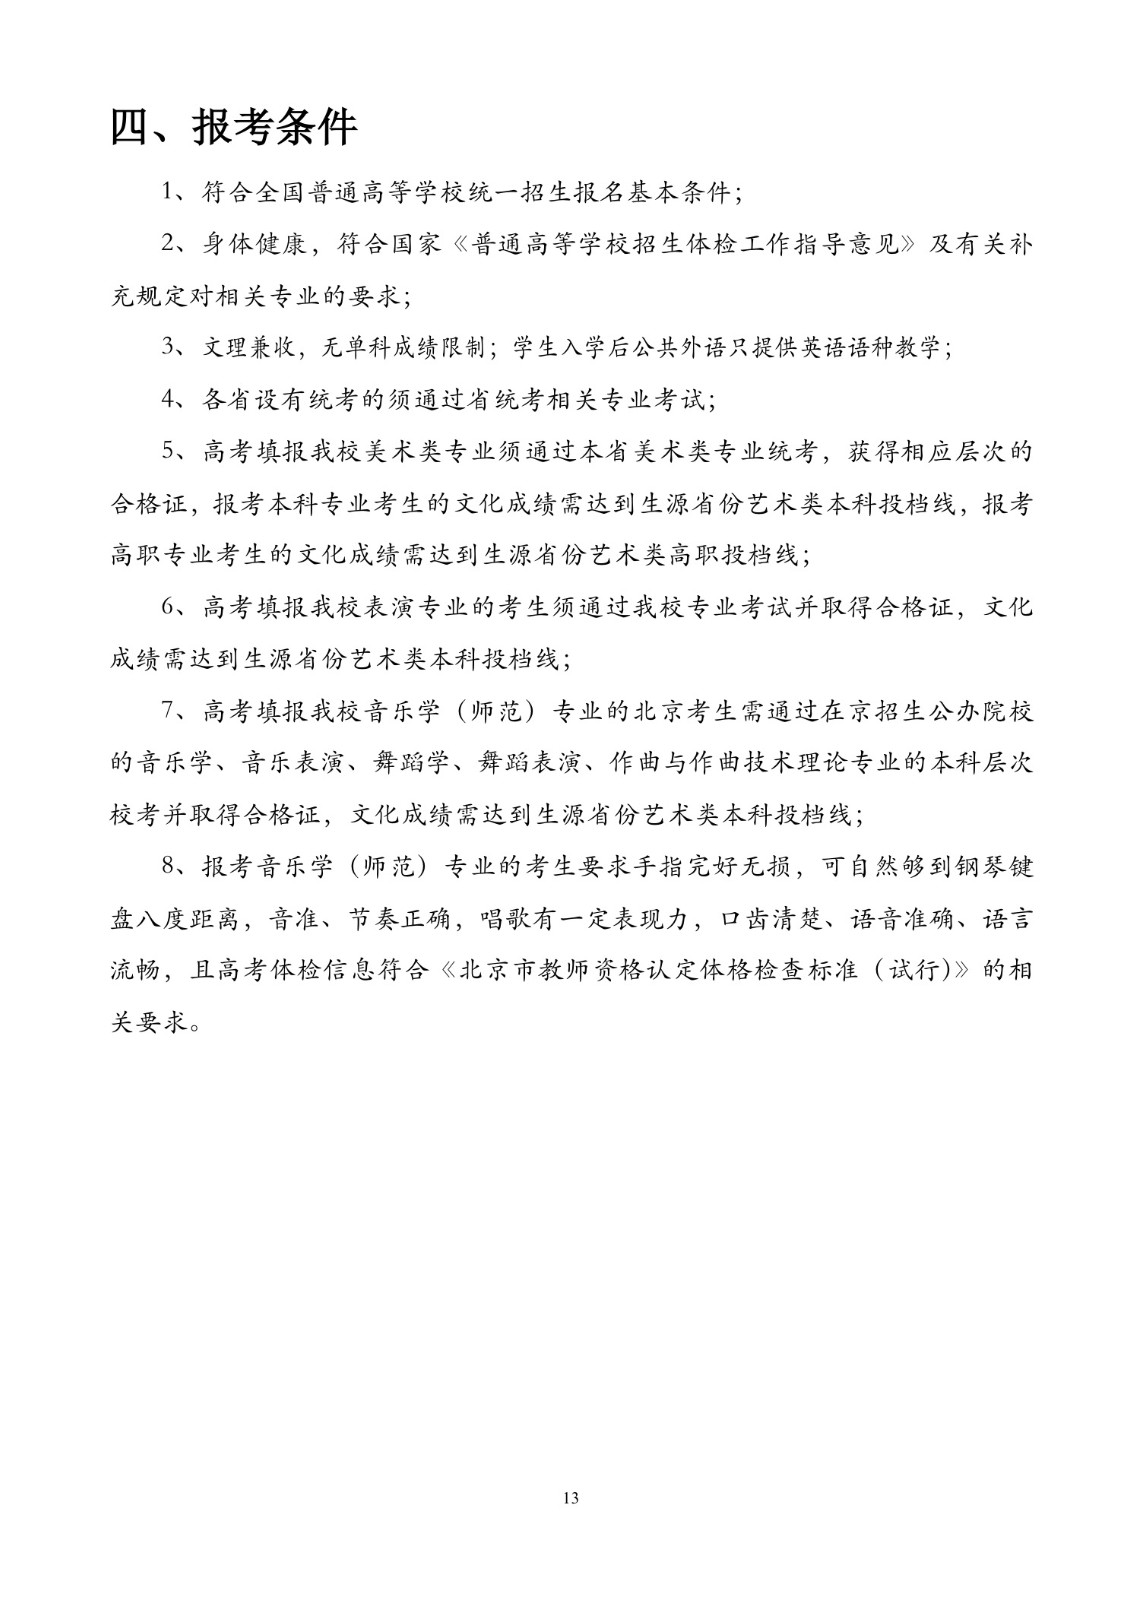 北京联合大学2018年艺术类招生简章20180103-page13 2.jpeg